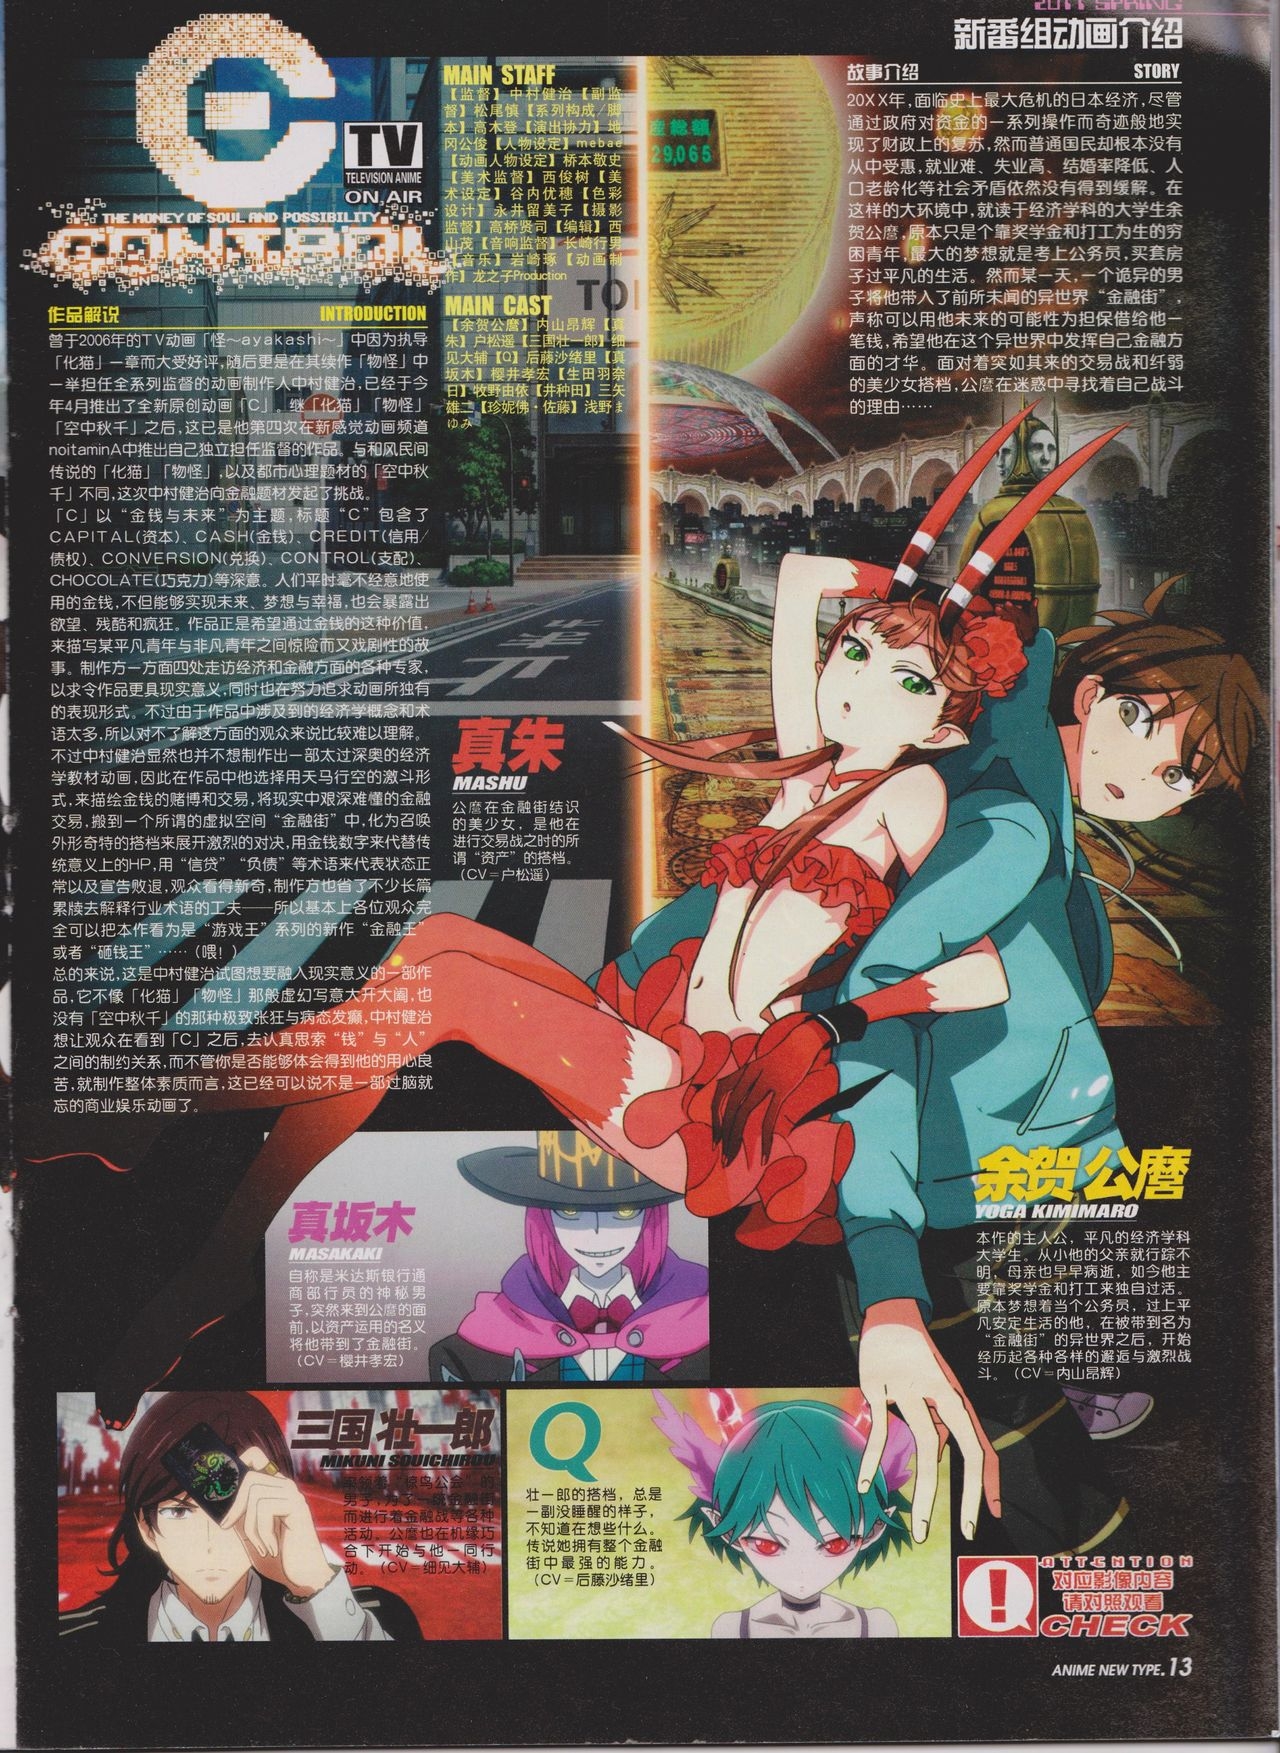 Anime New Type Vol.100 14